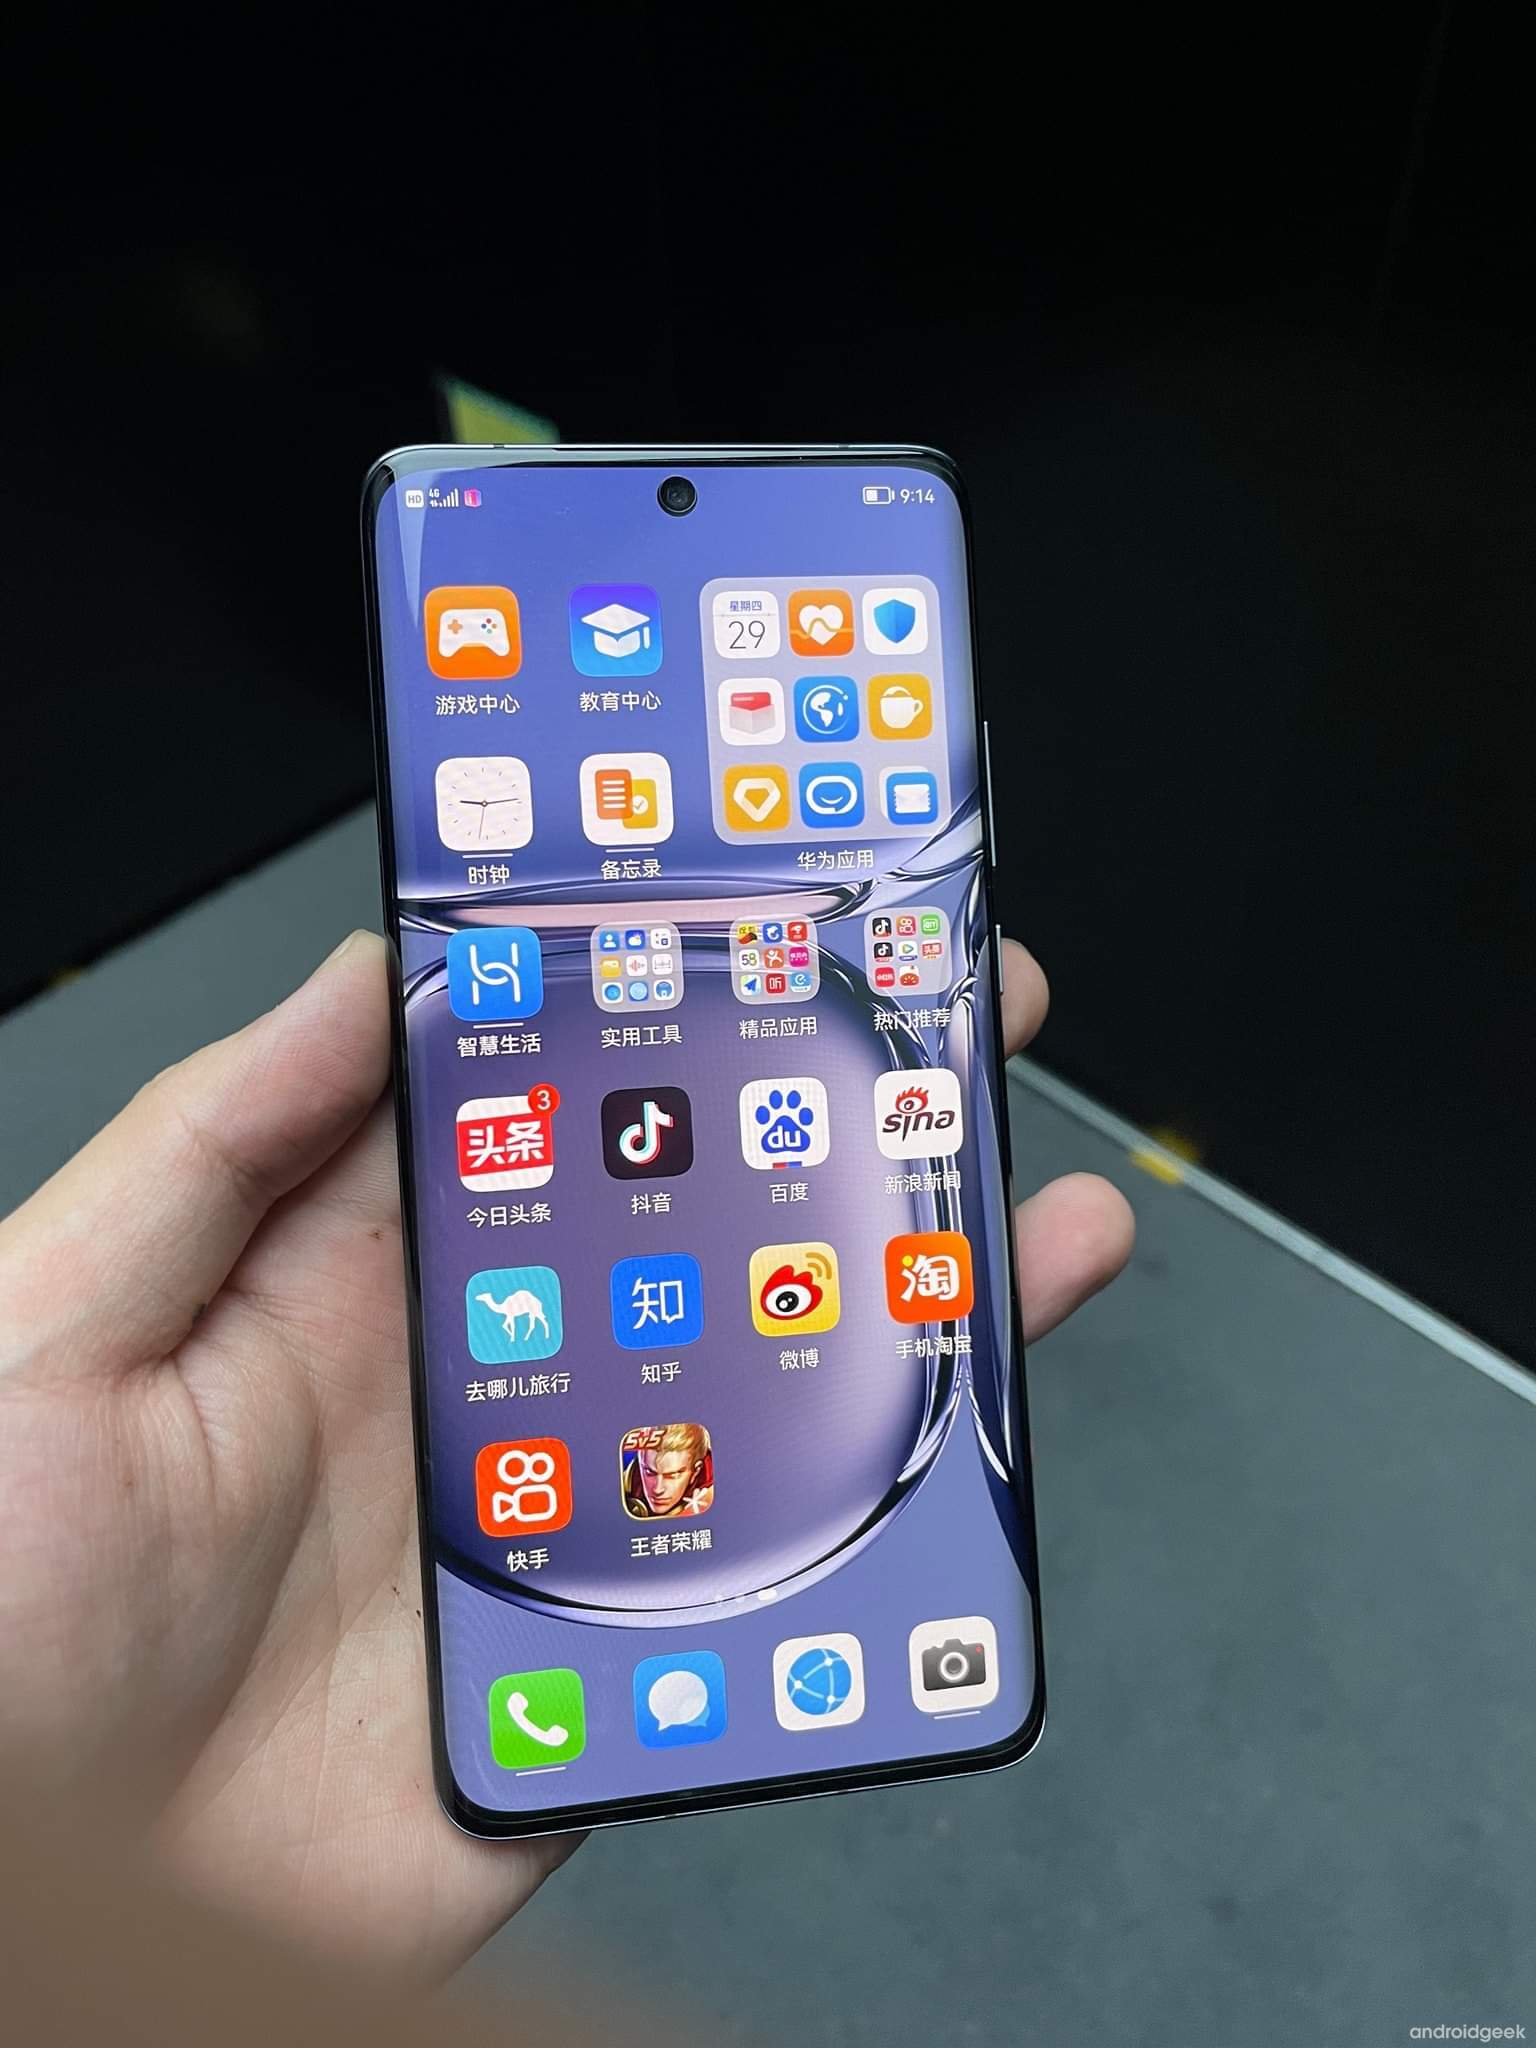 Segundo uma nova informação a Huawei irá ter acesso ao Snapdragon 778G e ao Snapdragon898 1